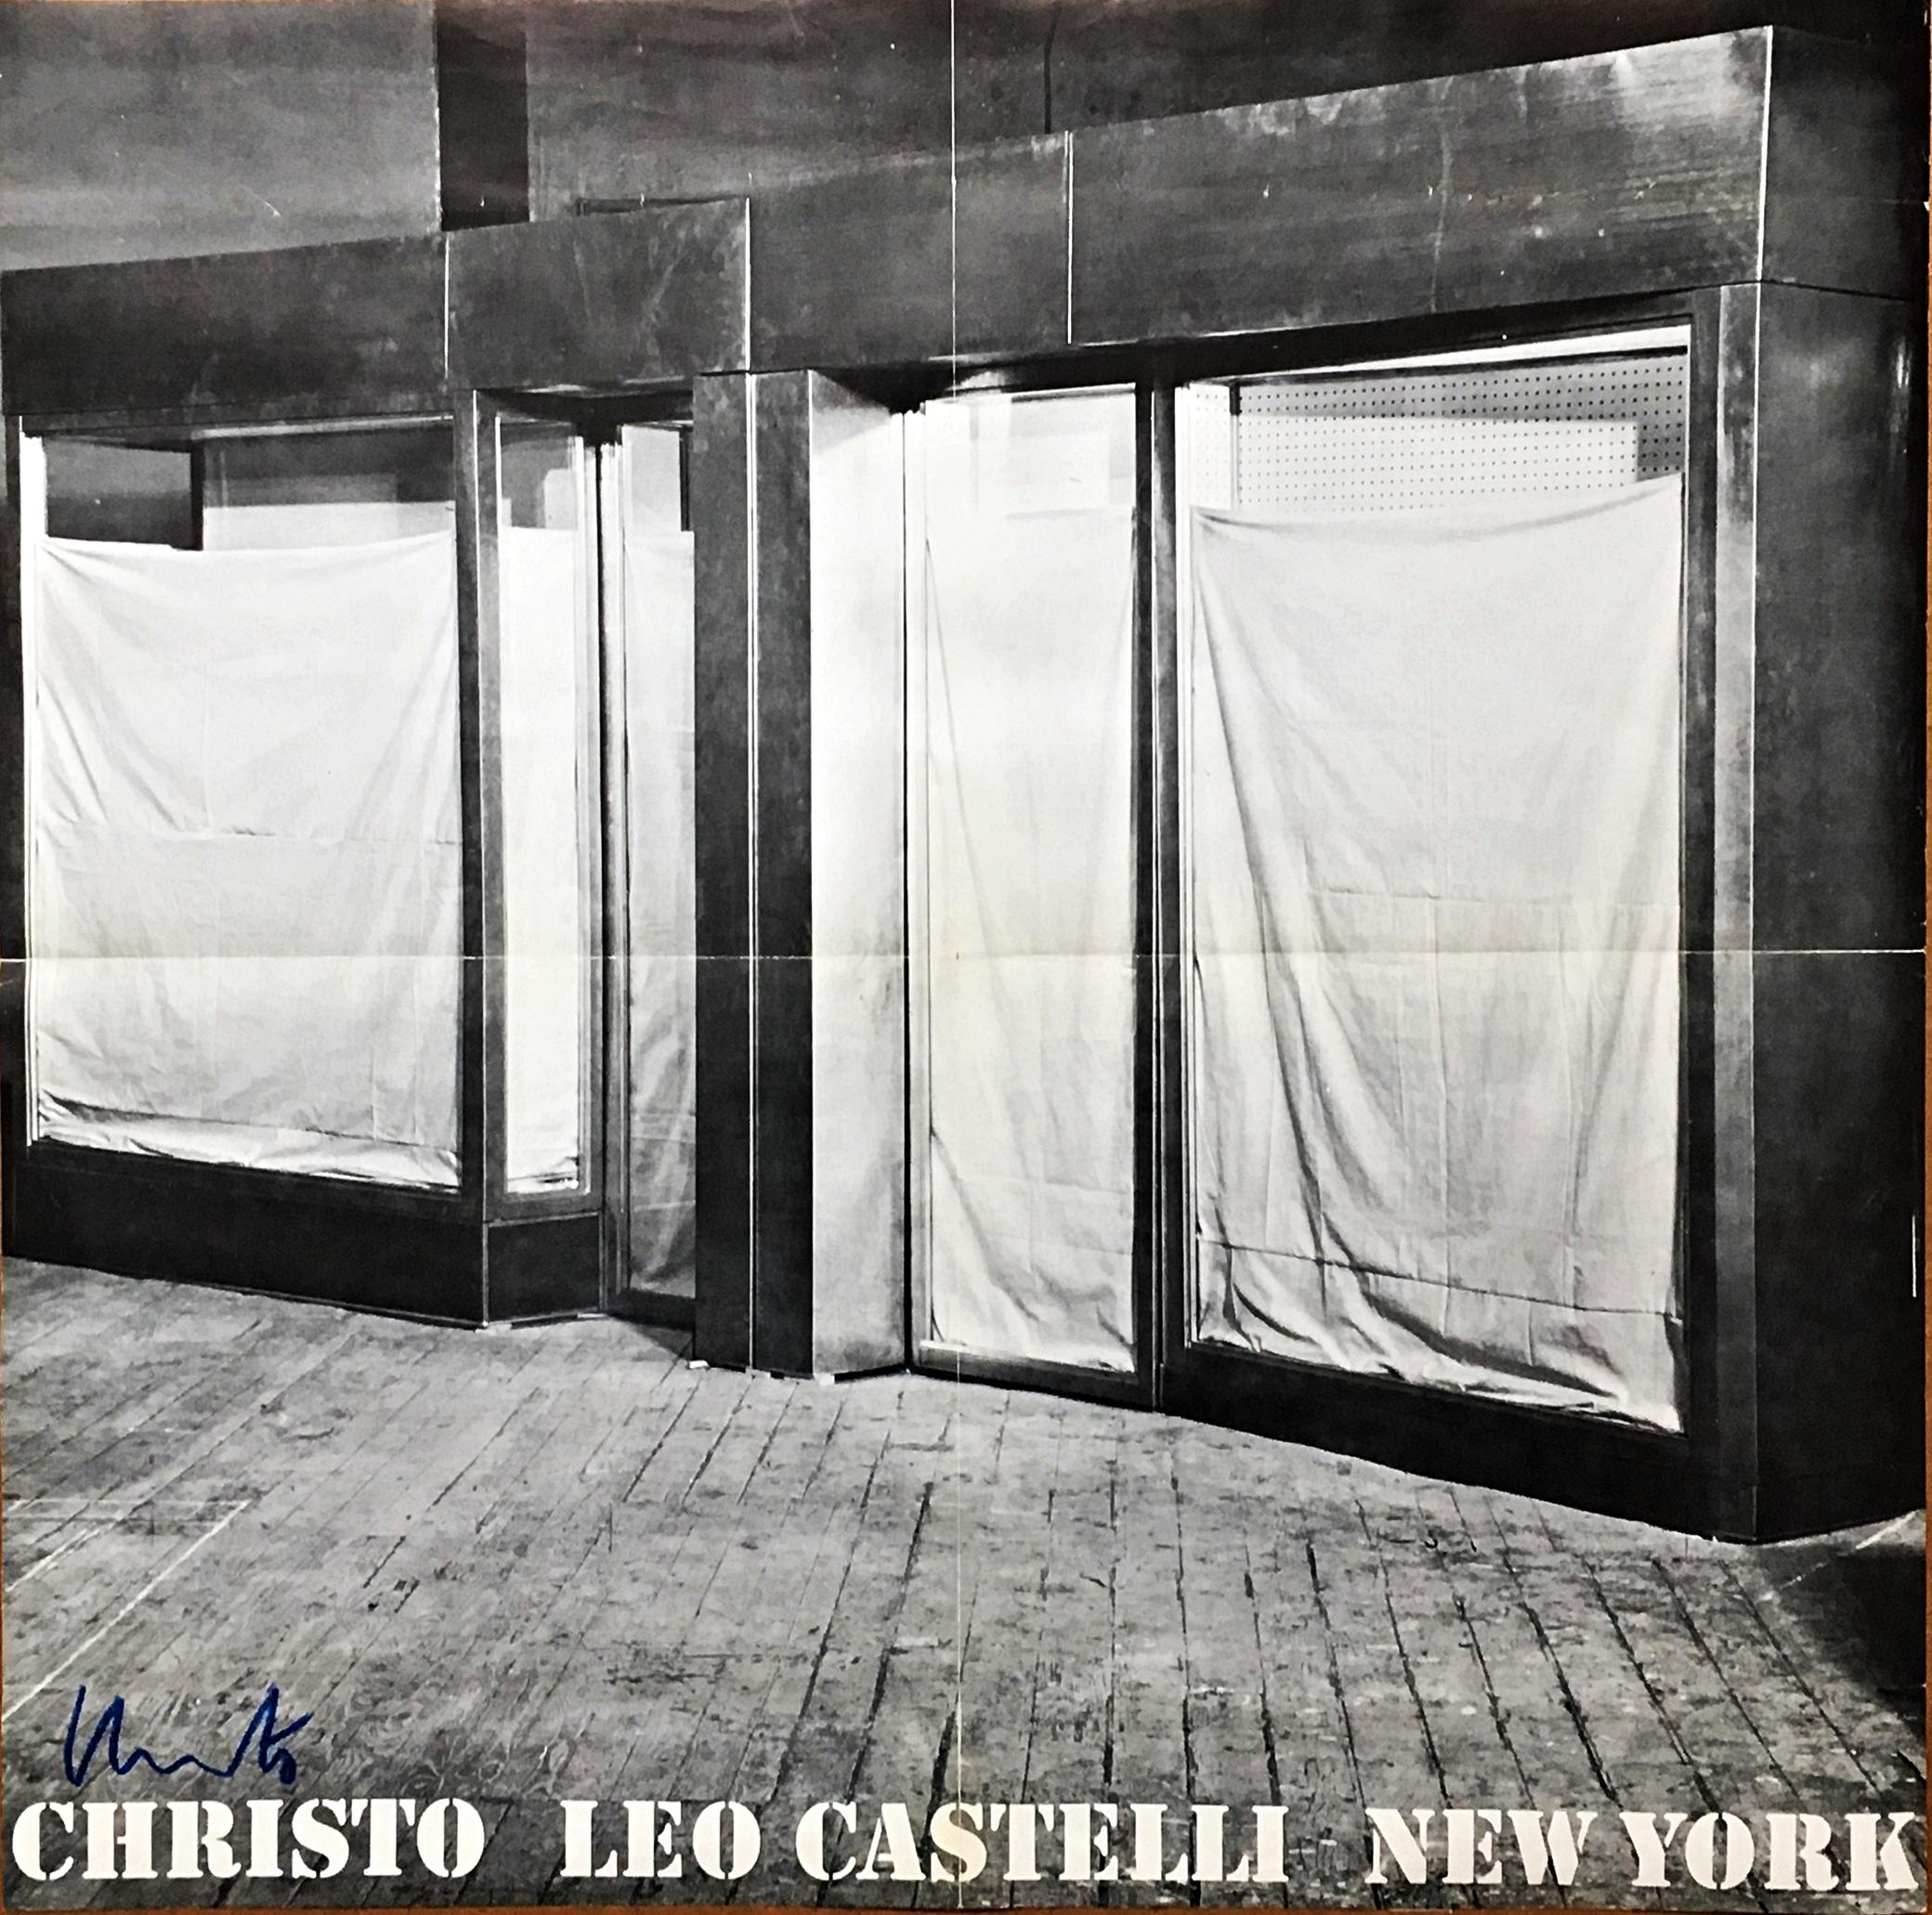 Christo
Christo à la Leo Castelli Gallery New York (signé à la main), 1966
Rare annonce d'affiche lithographiée en offset
Signée à la main par Christo au marqueur bleu sur le devant en bas à gauche. Adressée à l'influent (légendaire) critique d'art